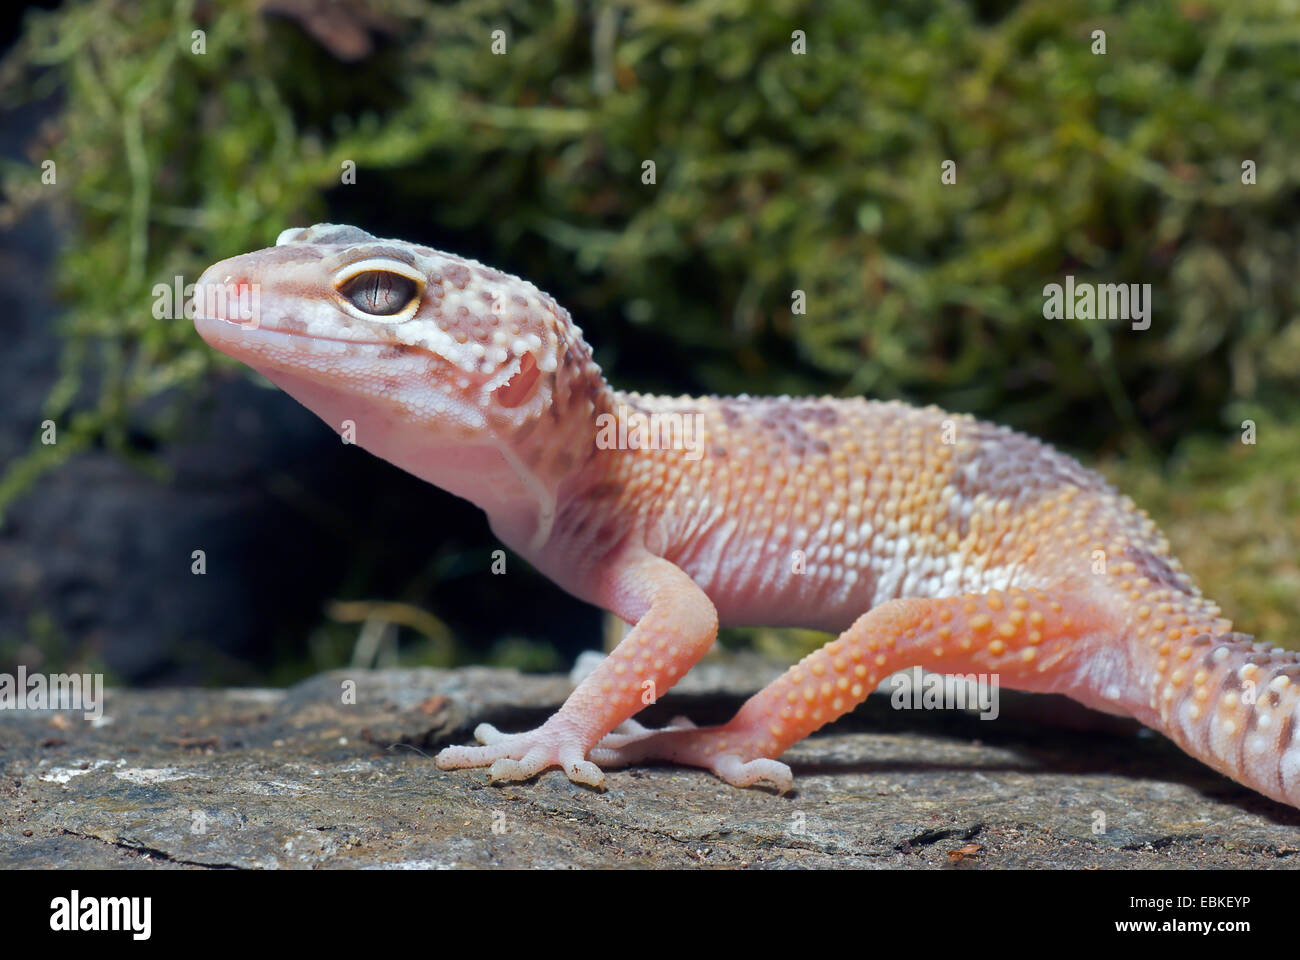 Le gecko léopard (Eublepharis macularius), sur une pierre Sunglow race Banque D'Images